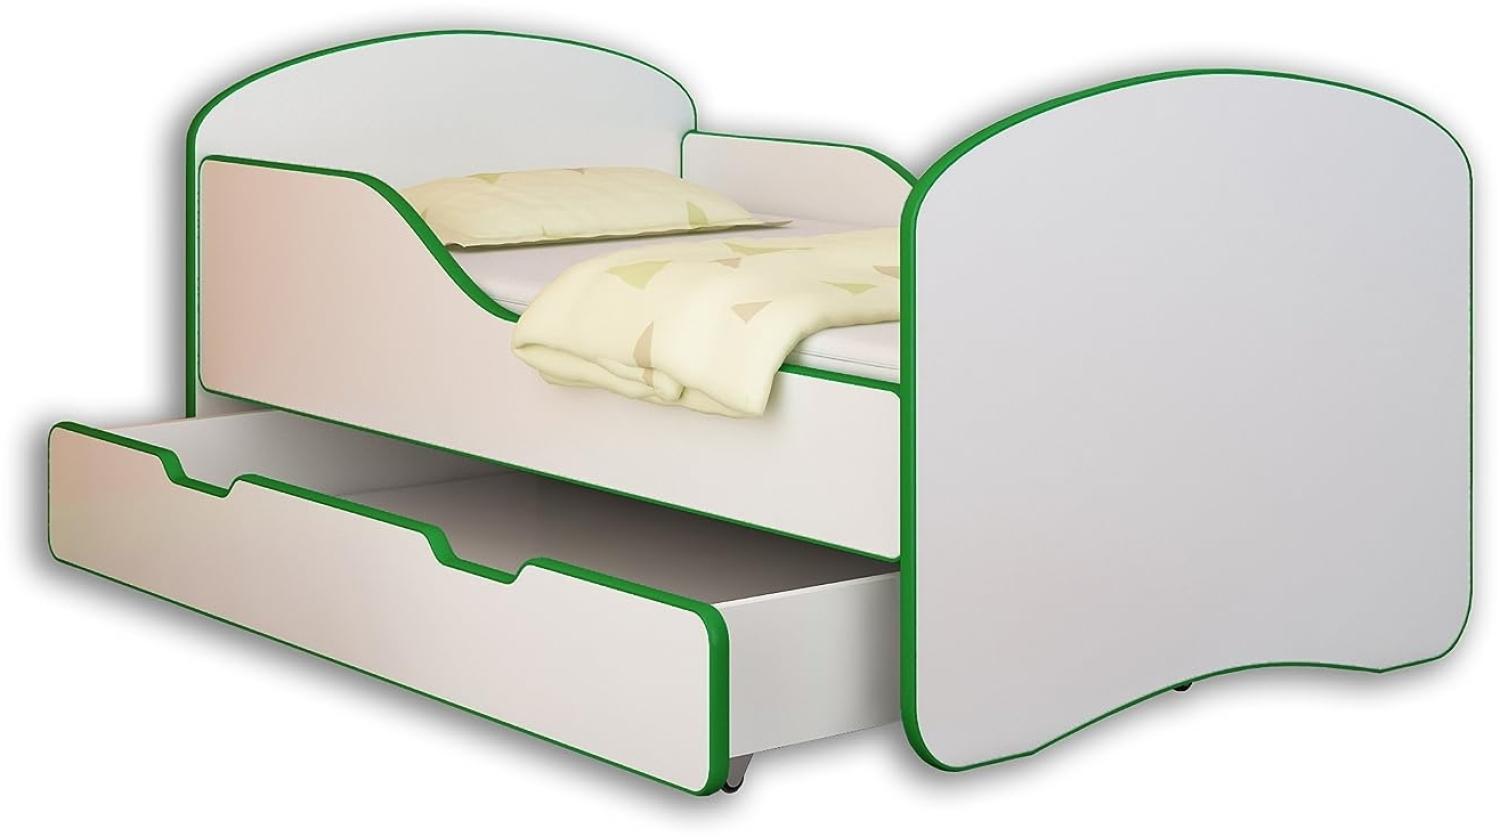 Jugendbett Kinderbett mit einer Schublade und Matratze Weiß ACMA I 140 160 180 (180x80 cm + drawer, Grün) Bild 1